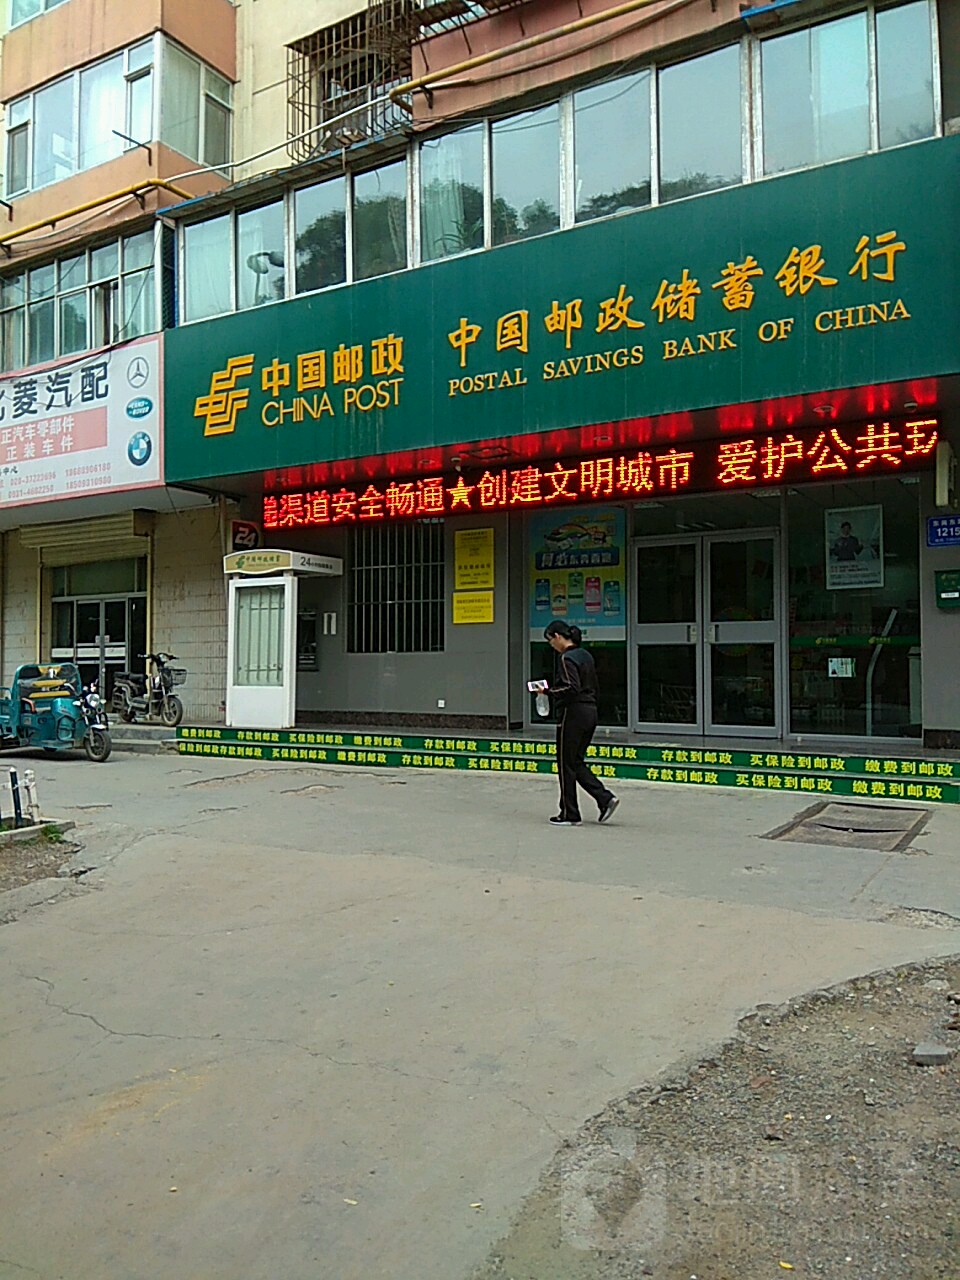 中國郵政儲蓄銀行(東部郵局營業部)